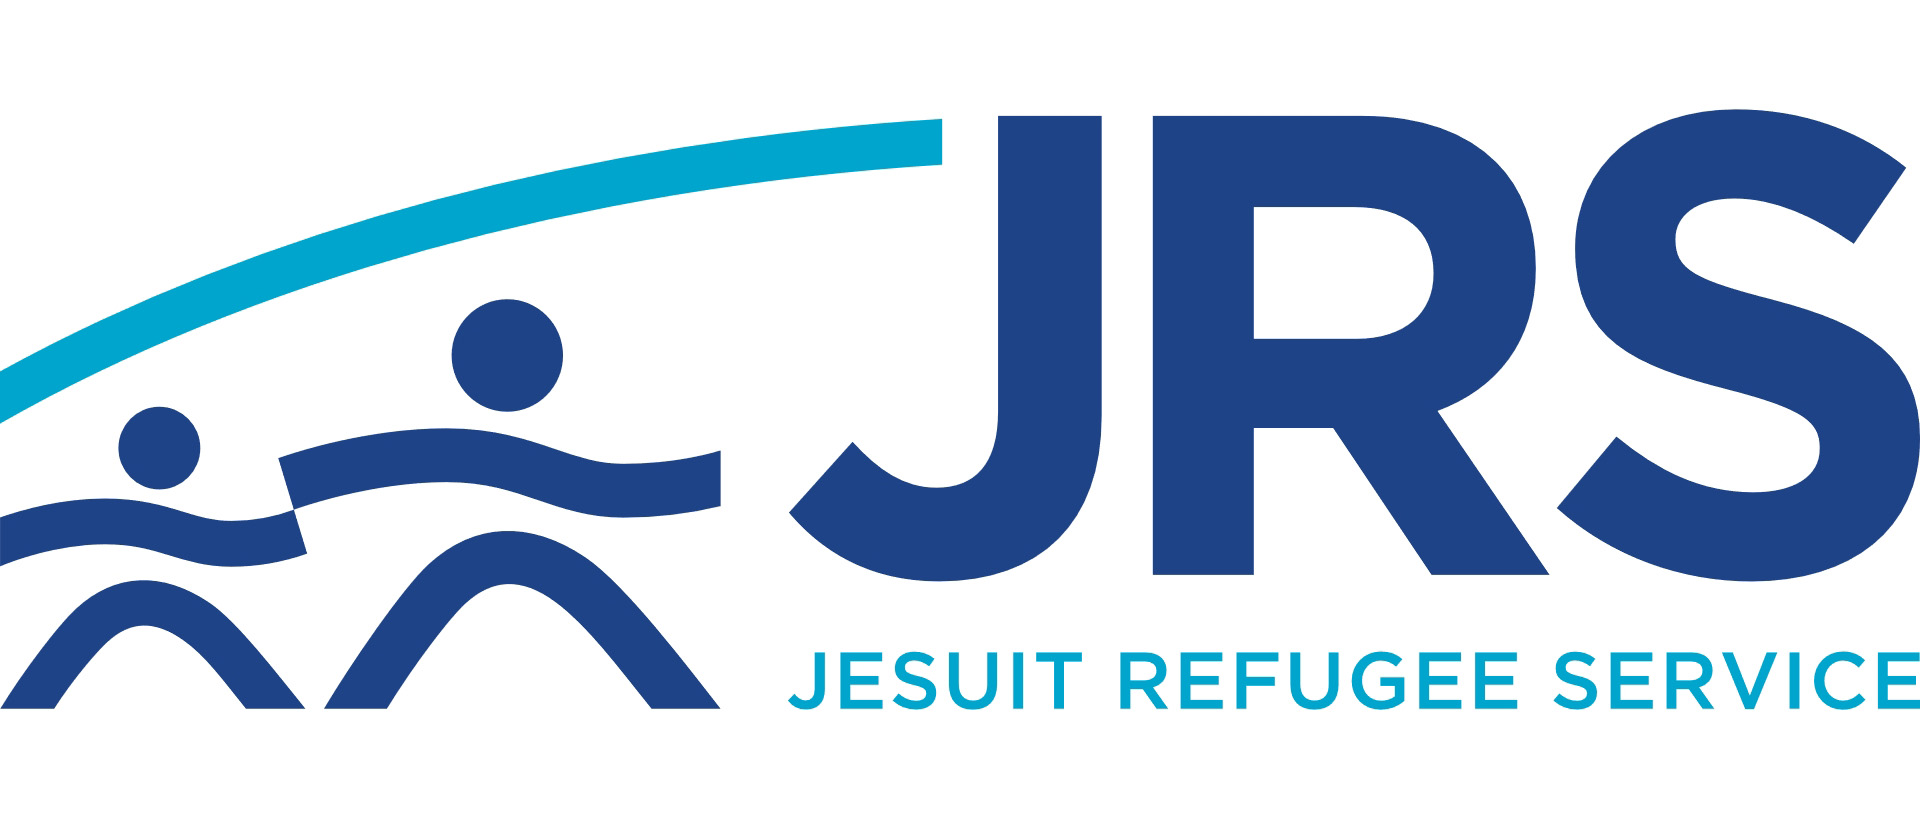 El Padre General reafirma el compromiso de los jesuitas en el Servicio Jesuita a Refugiados (JRS)